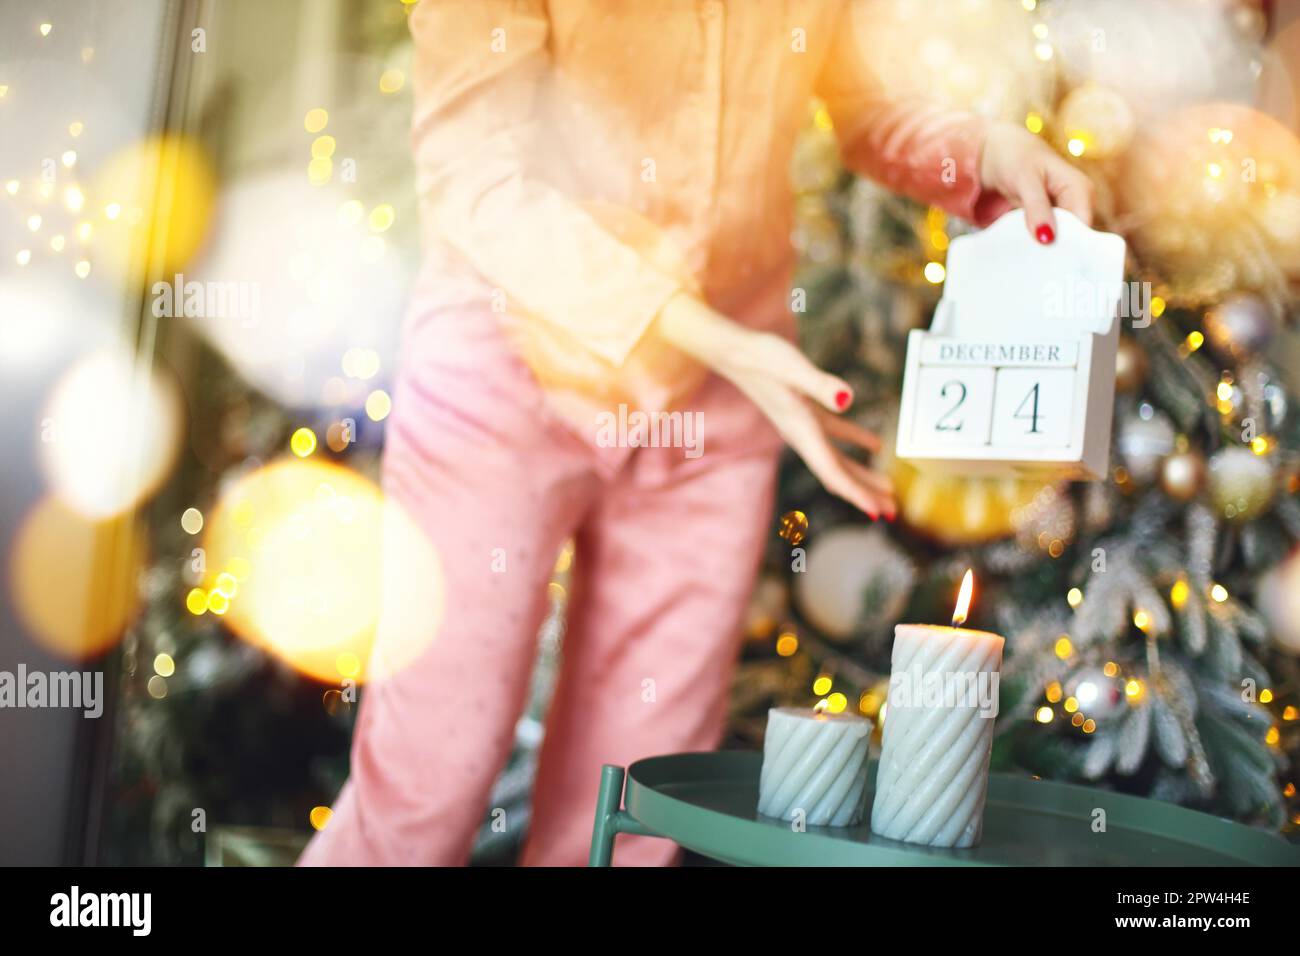 Jour de Noël. Coupe courte de femme dans un calendrier en bois pajama, du 24 au 25 décembre du matin, debout près d'un firmier décoré à la maison Banque D'Images